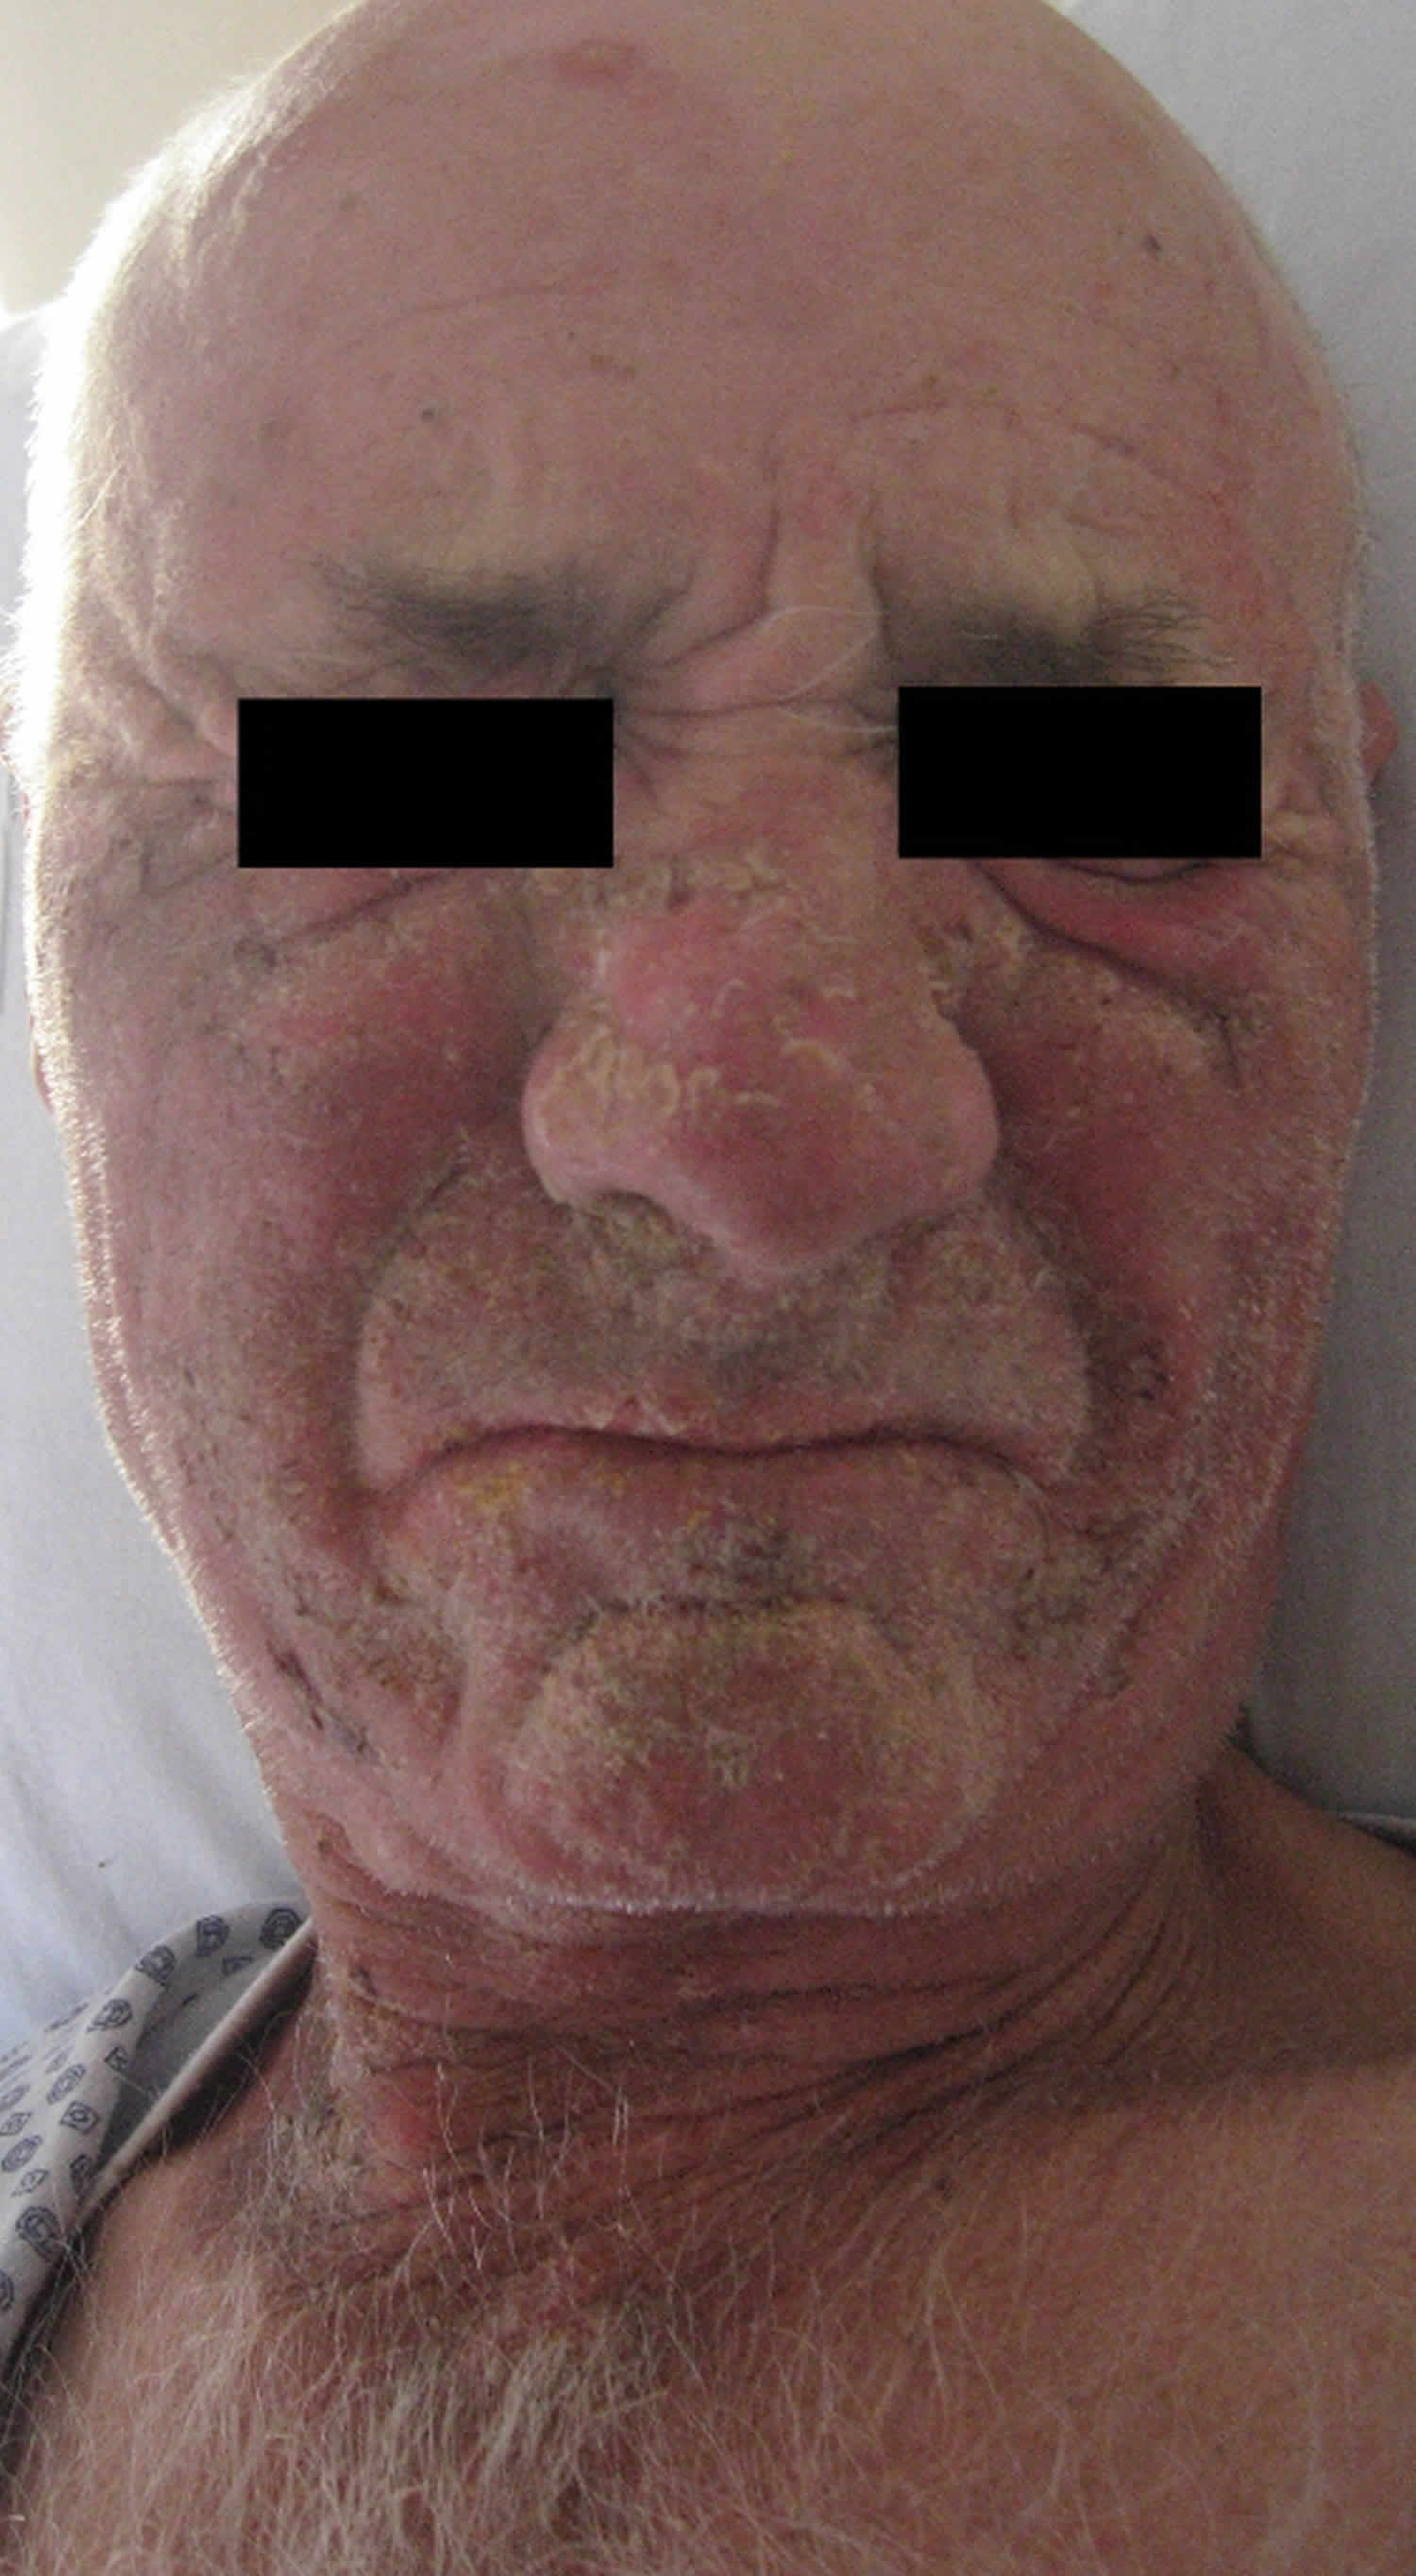 Pellagra dermatitis